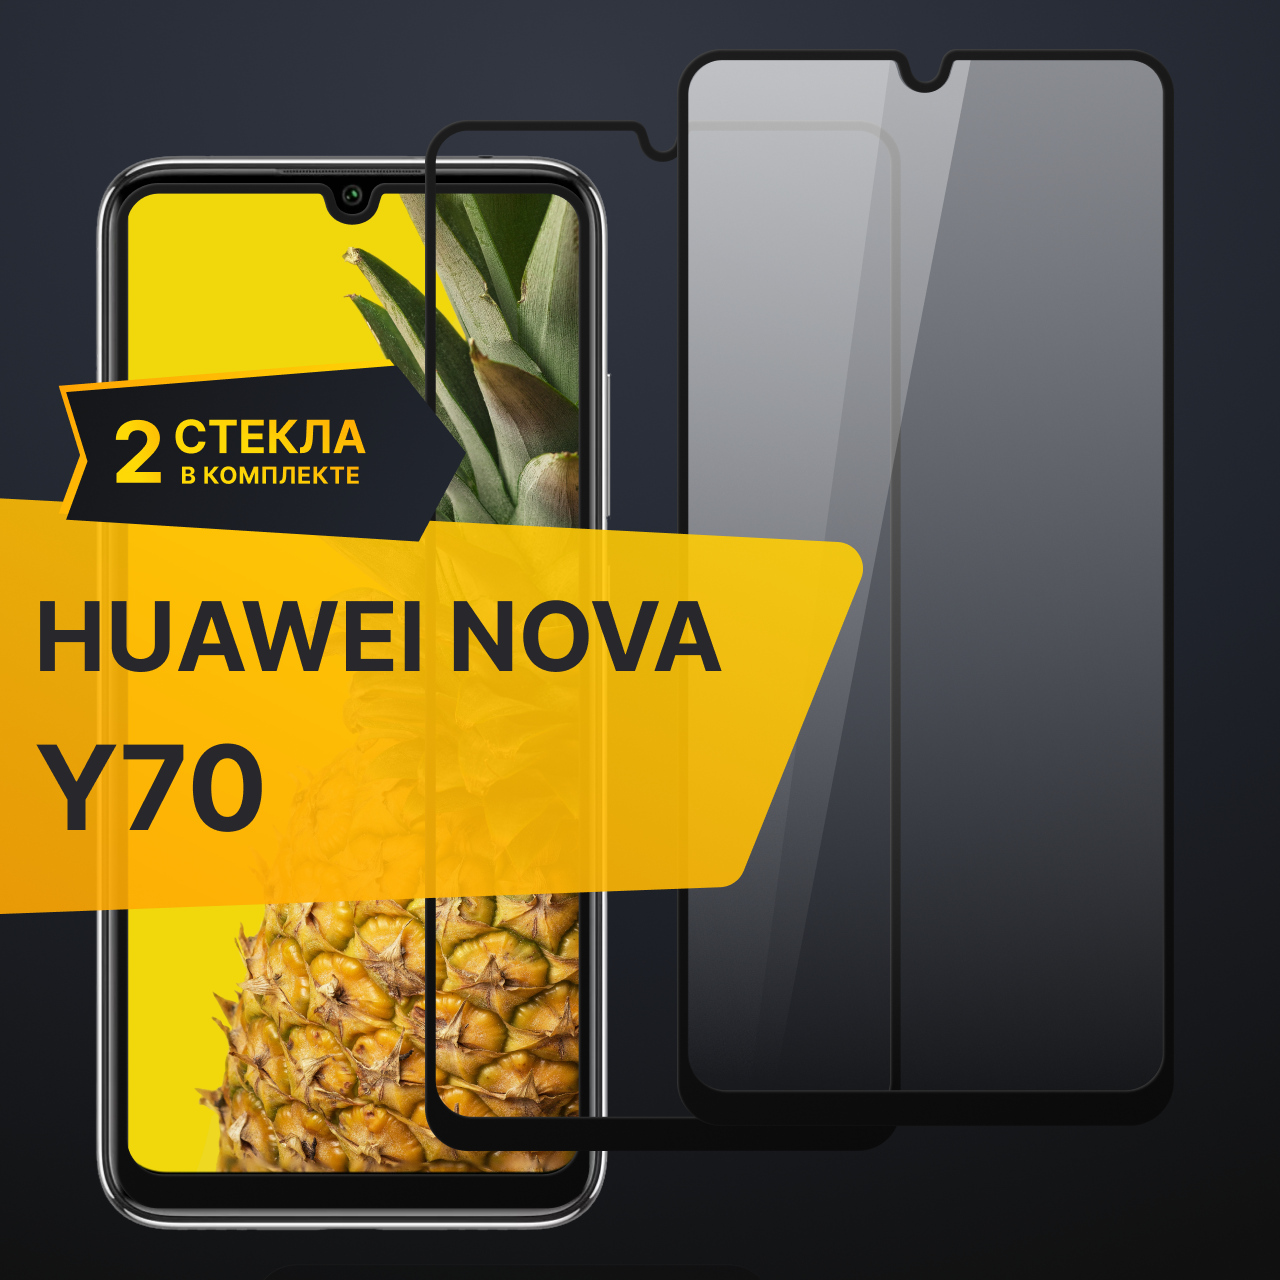 Комплект 2 шт. Противоударное защитное стекло для телефона Huawei Nova Y70 / Полноклеевое 3D стекло с олеофобным покрытием на смартфон Хуавей Нова У70 / С черной рамкой